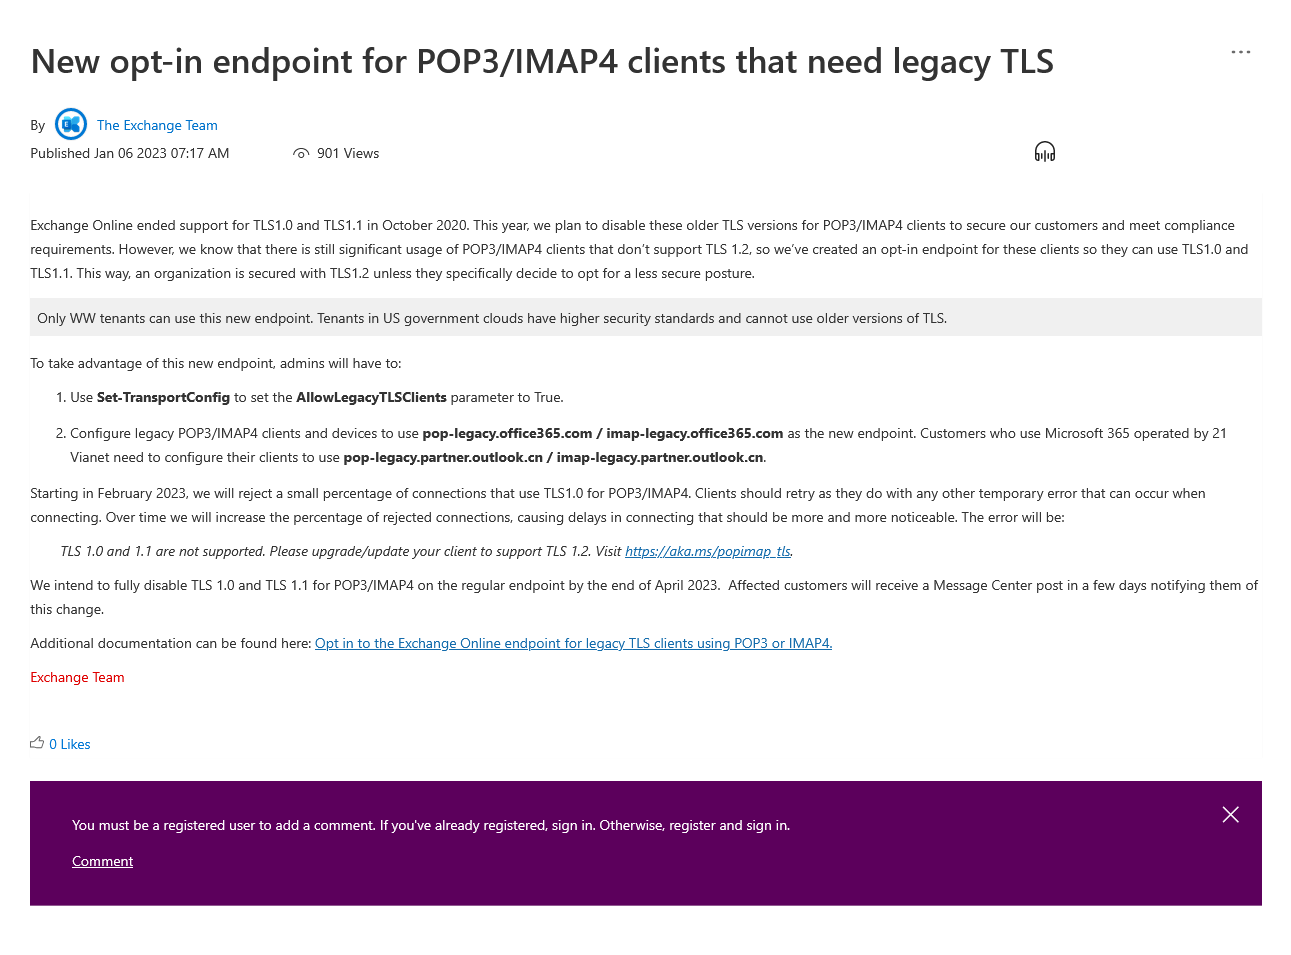 微软宣布 Exchange Onlin：将终止POP3和IMAP4的TLS 1.0/1.1 支持